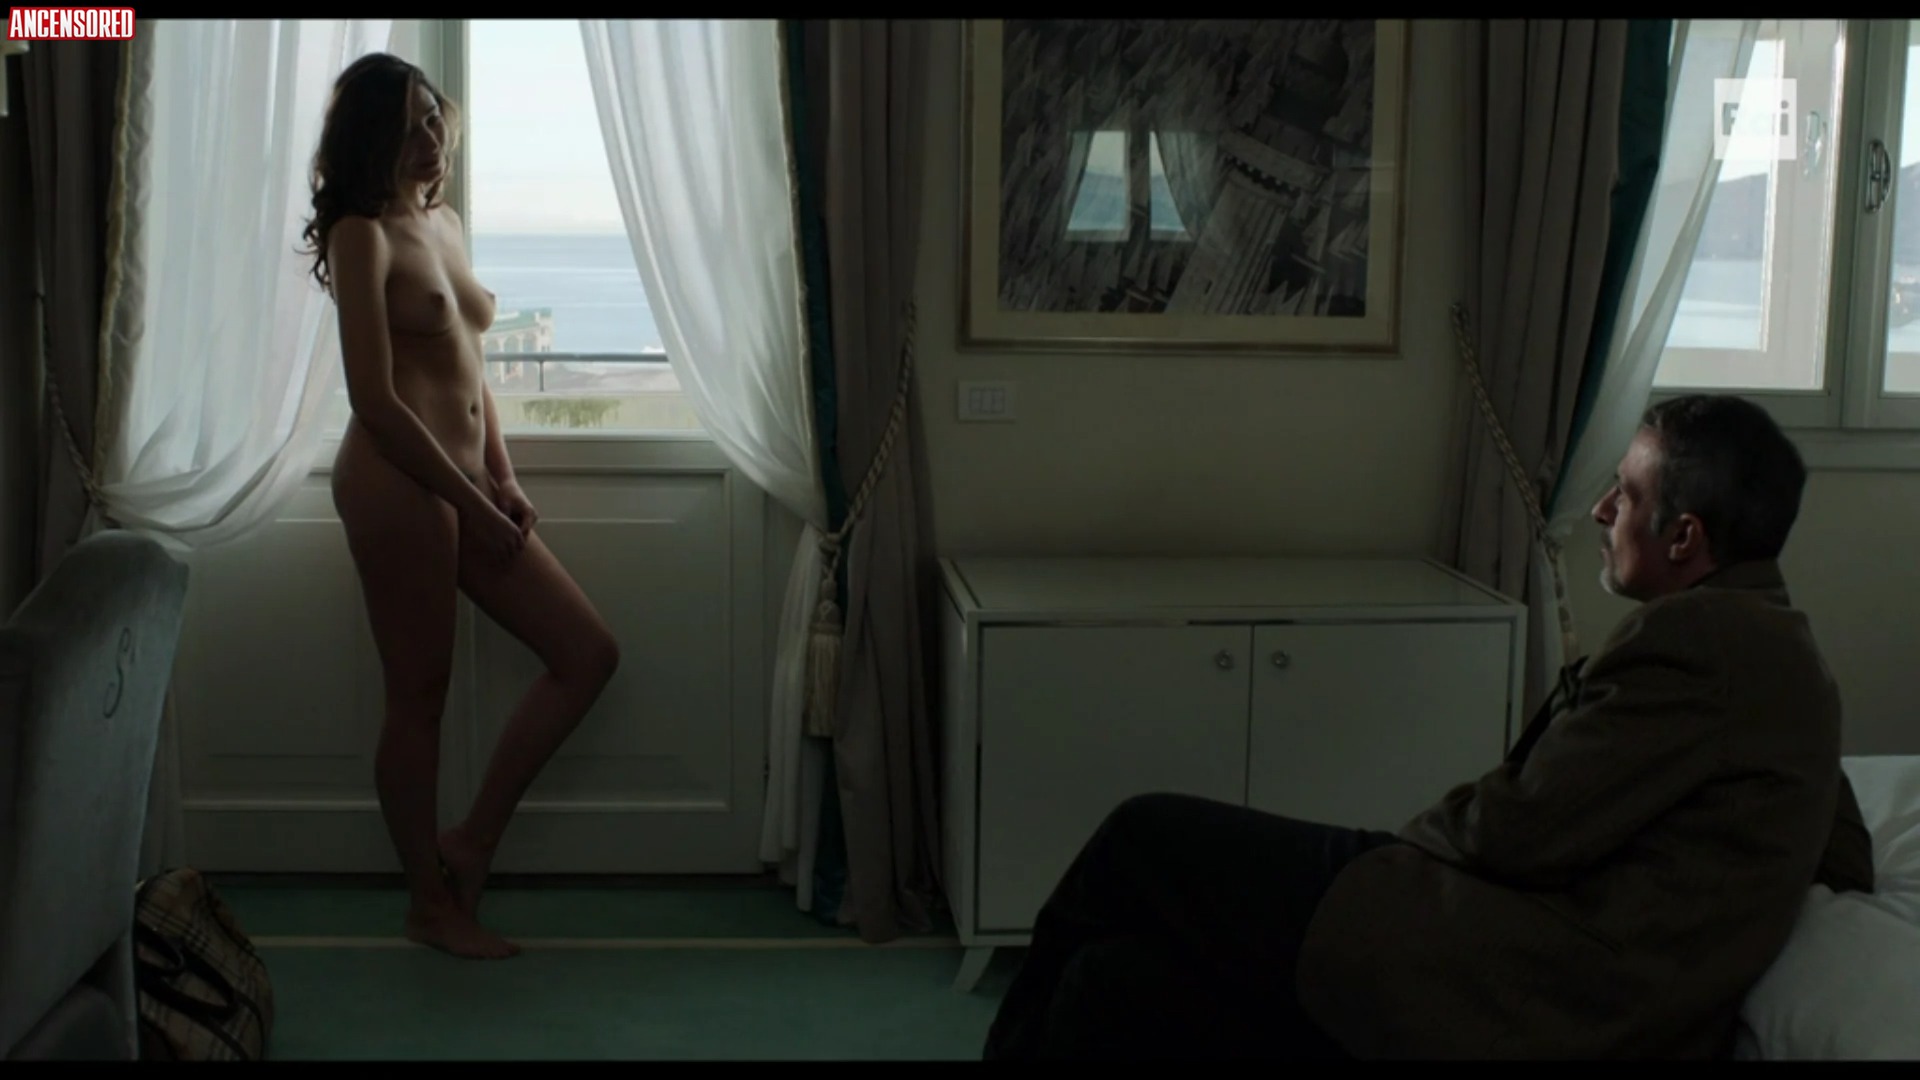 Sophie di martino nude - 🧡 Marianna Di Martino Naked - La Santa, 2013...